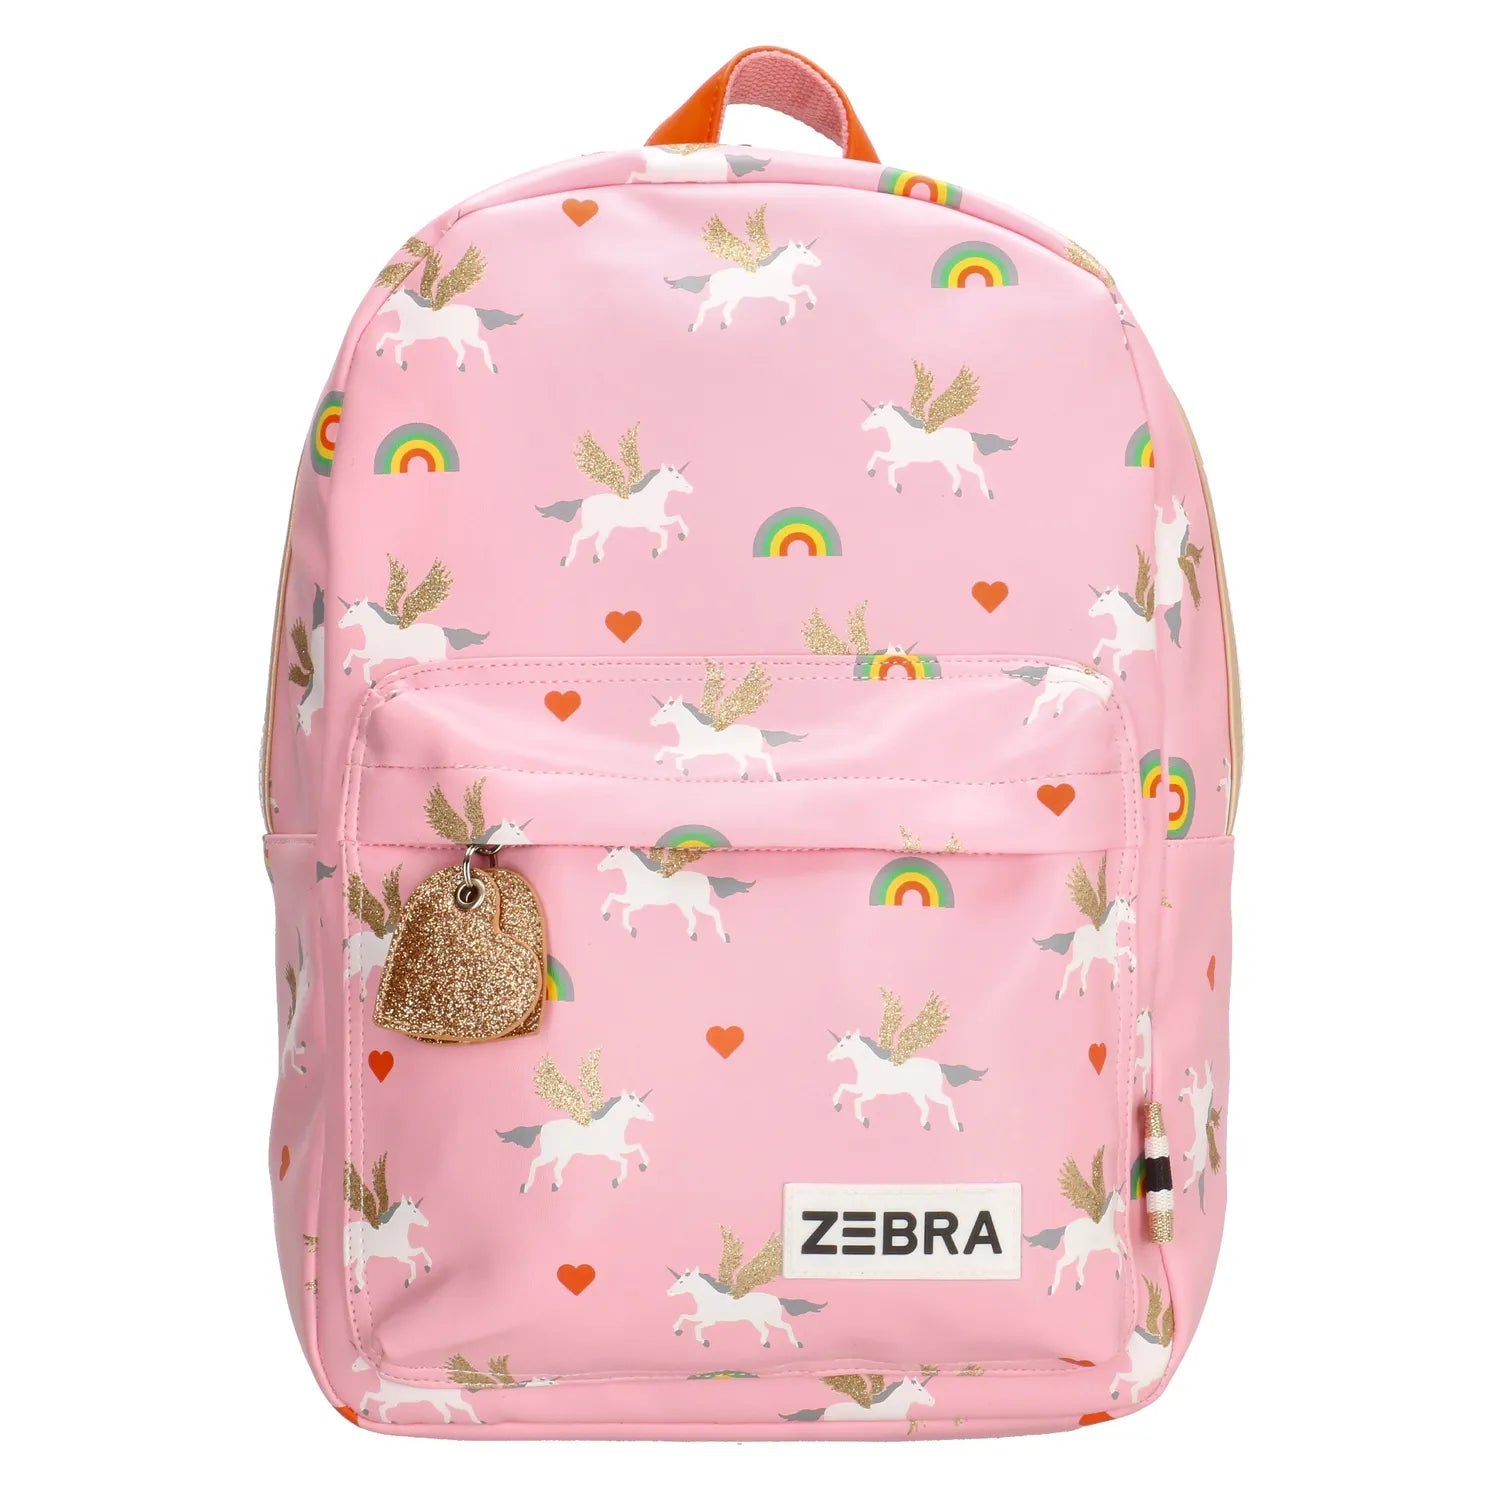 Zebra Backpack (S) - Unicorn Love